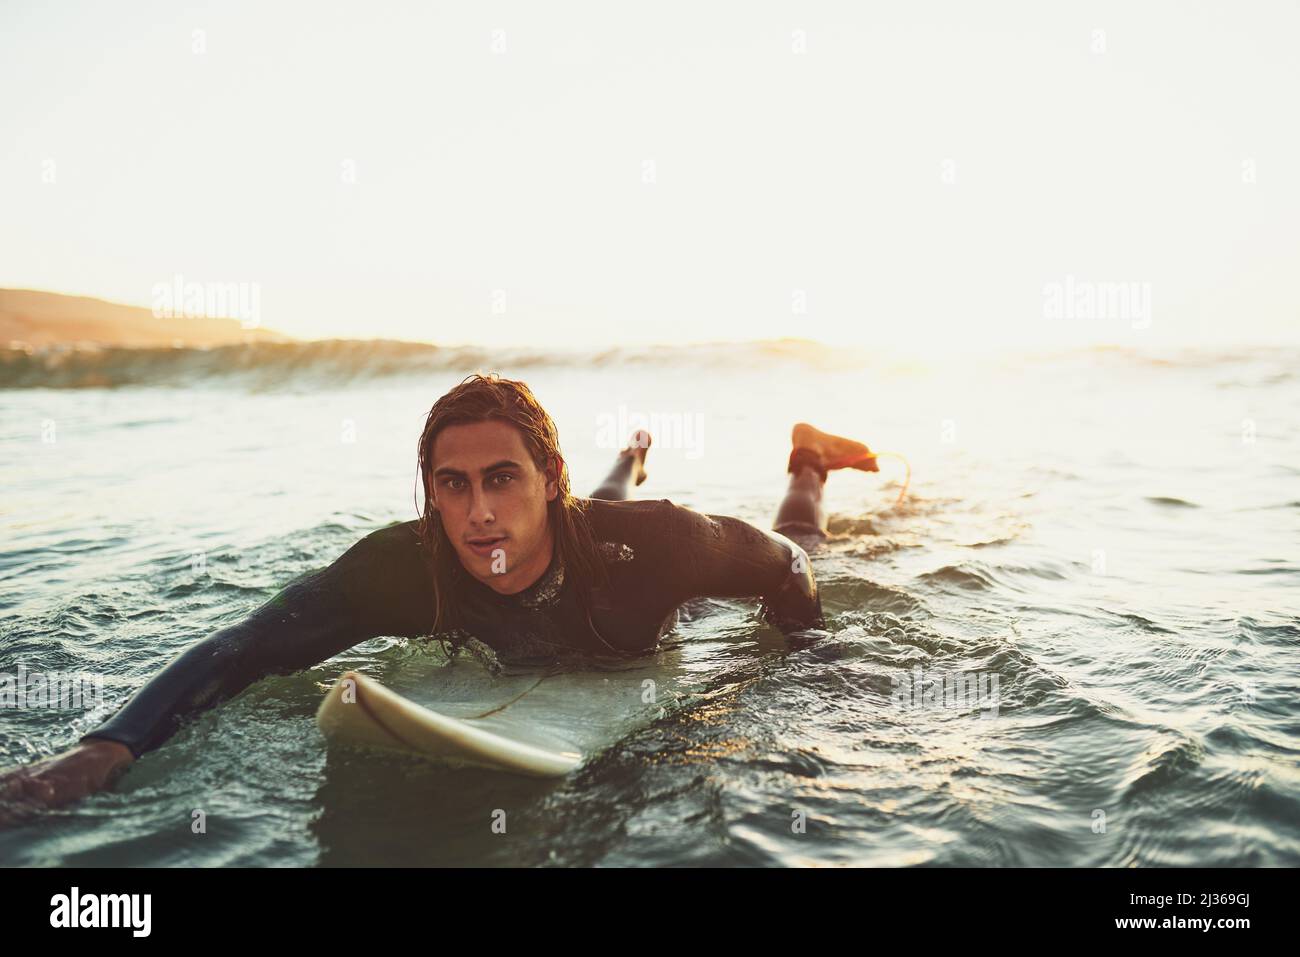 Il surf è tutto circa sentire il ritmo dell'oceano. Ritratto di un giovanotto che si addita su una tavola da surf in mare. Foto Stock